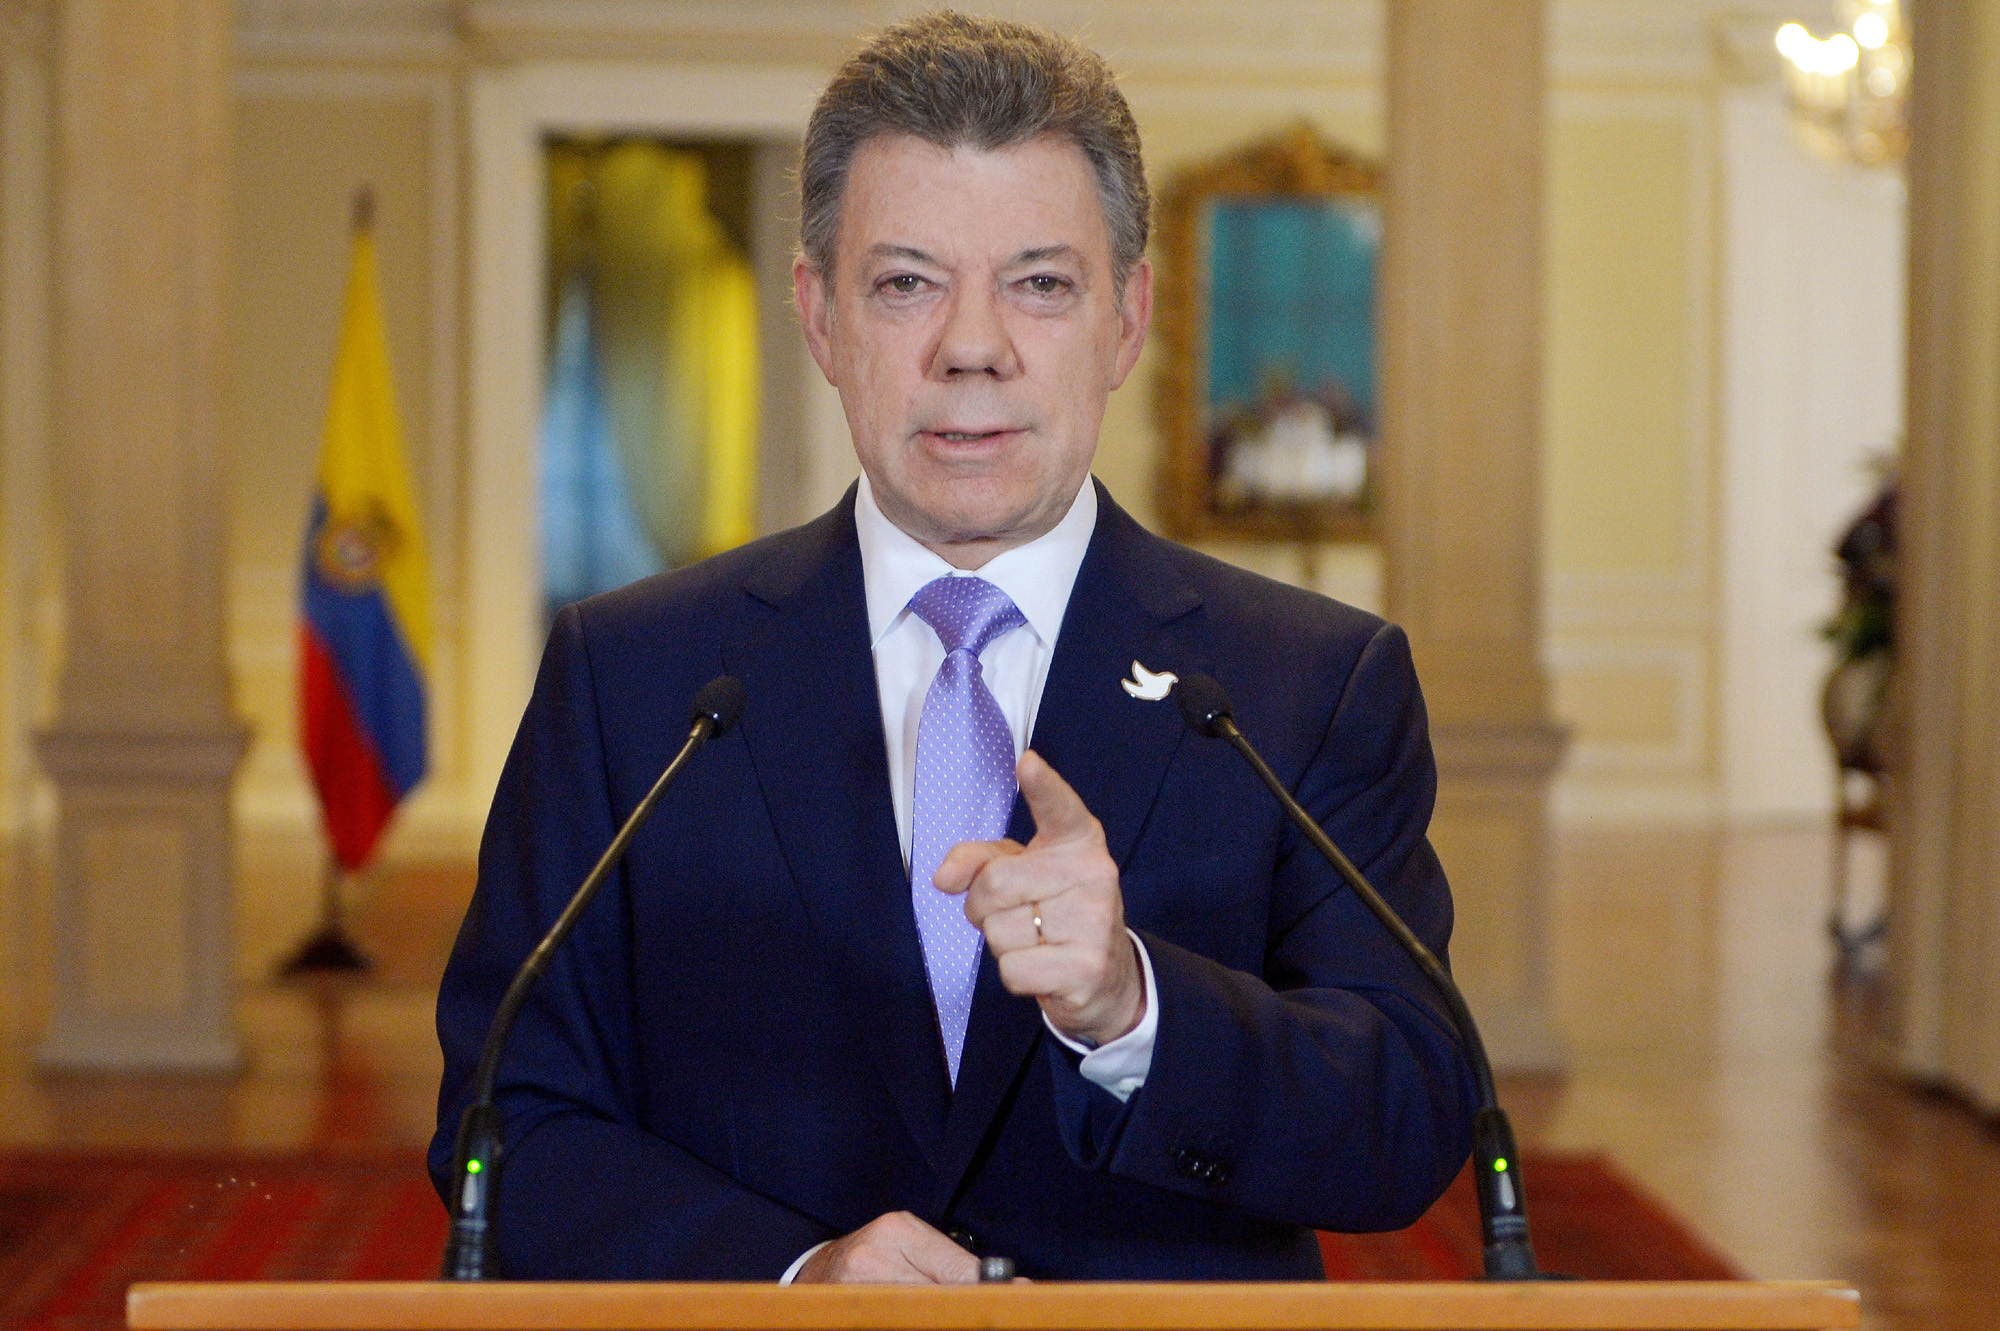 El presidente de Colombia habla de iniciar negociaciones, las FARC responden «estamos listos»